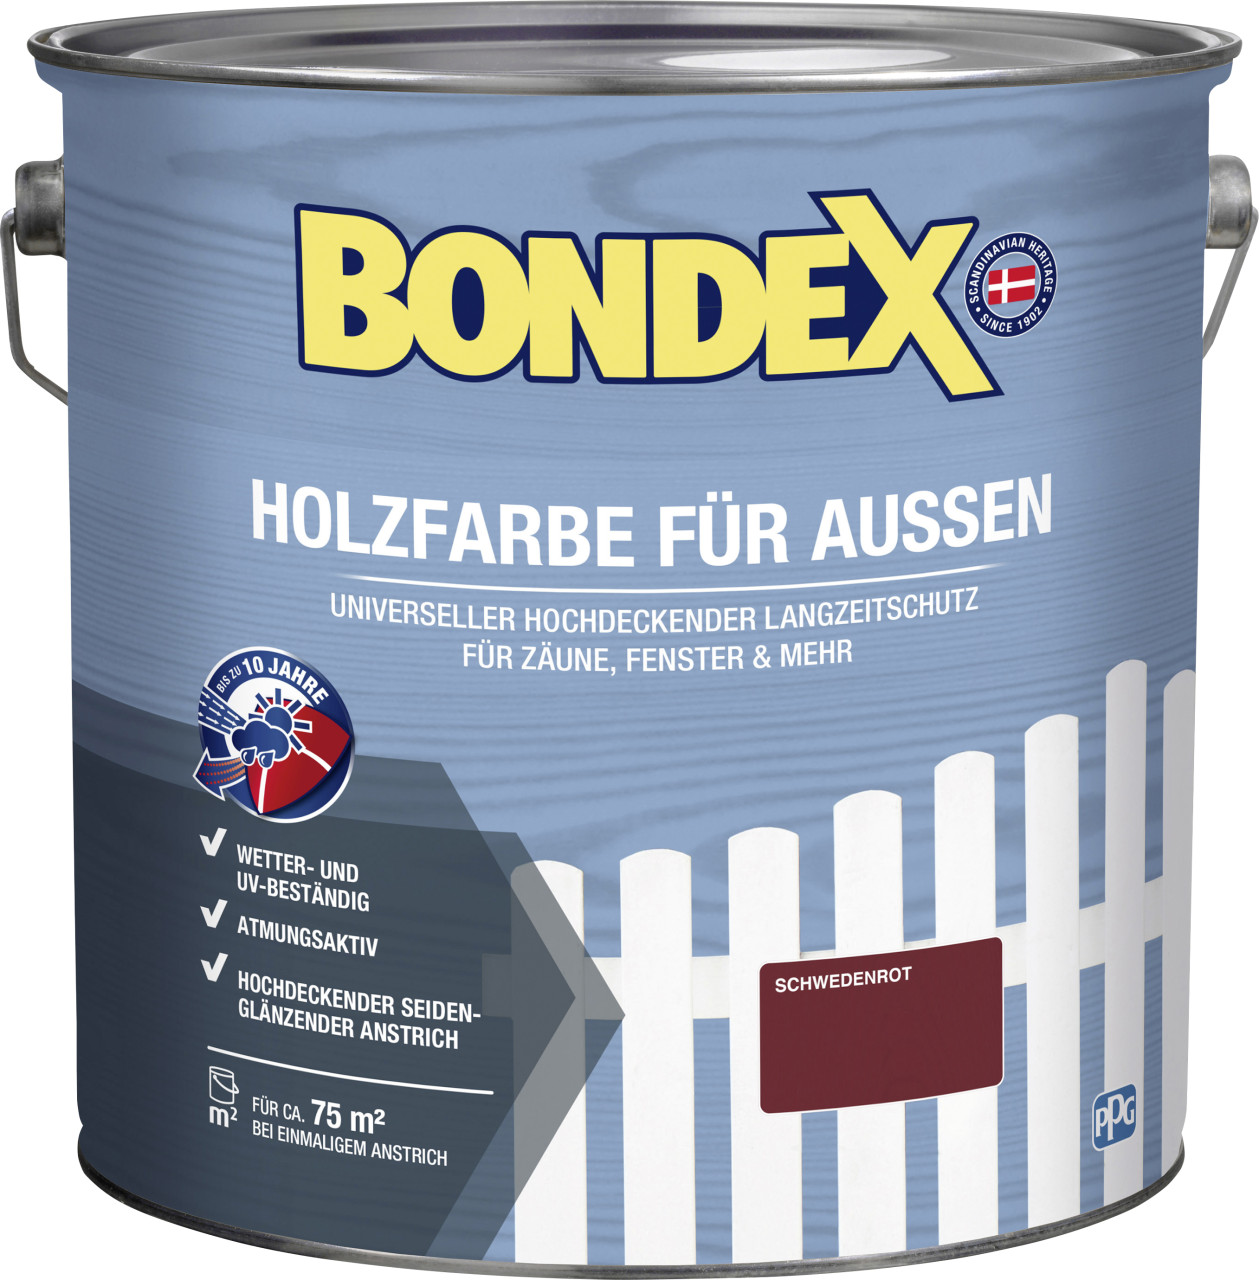 Bondex Holzfarbe für Aussen 7,5 L schwedenrot von Bondex